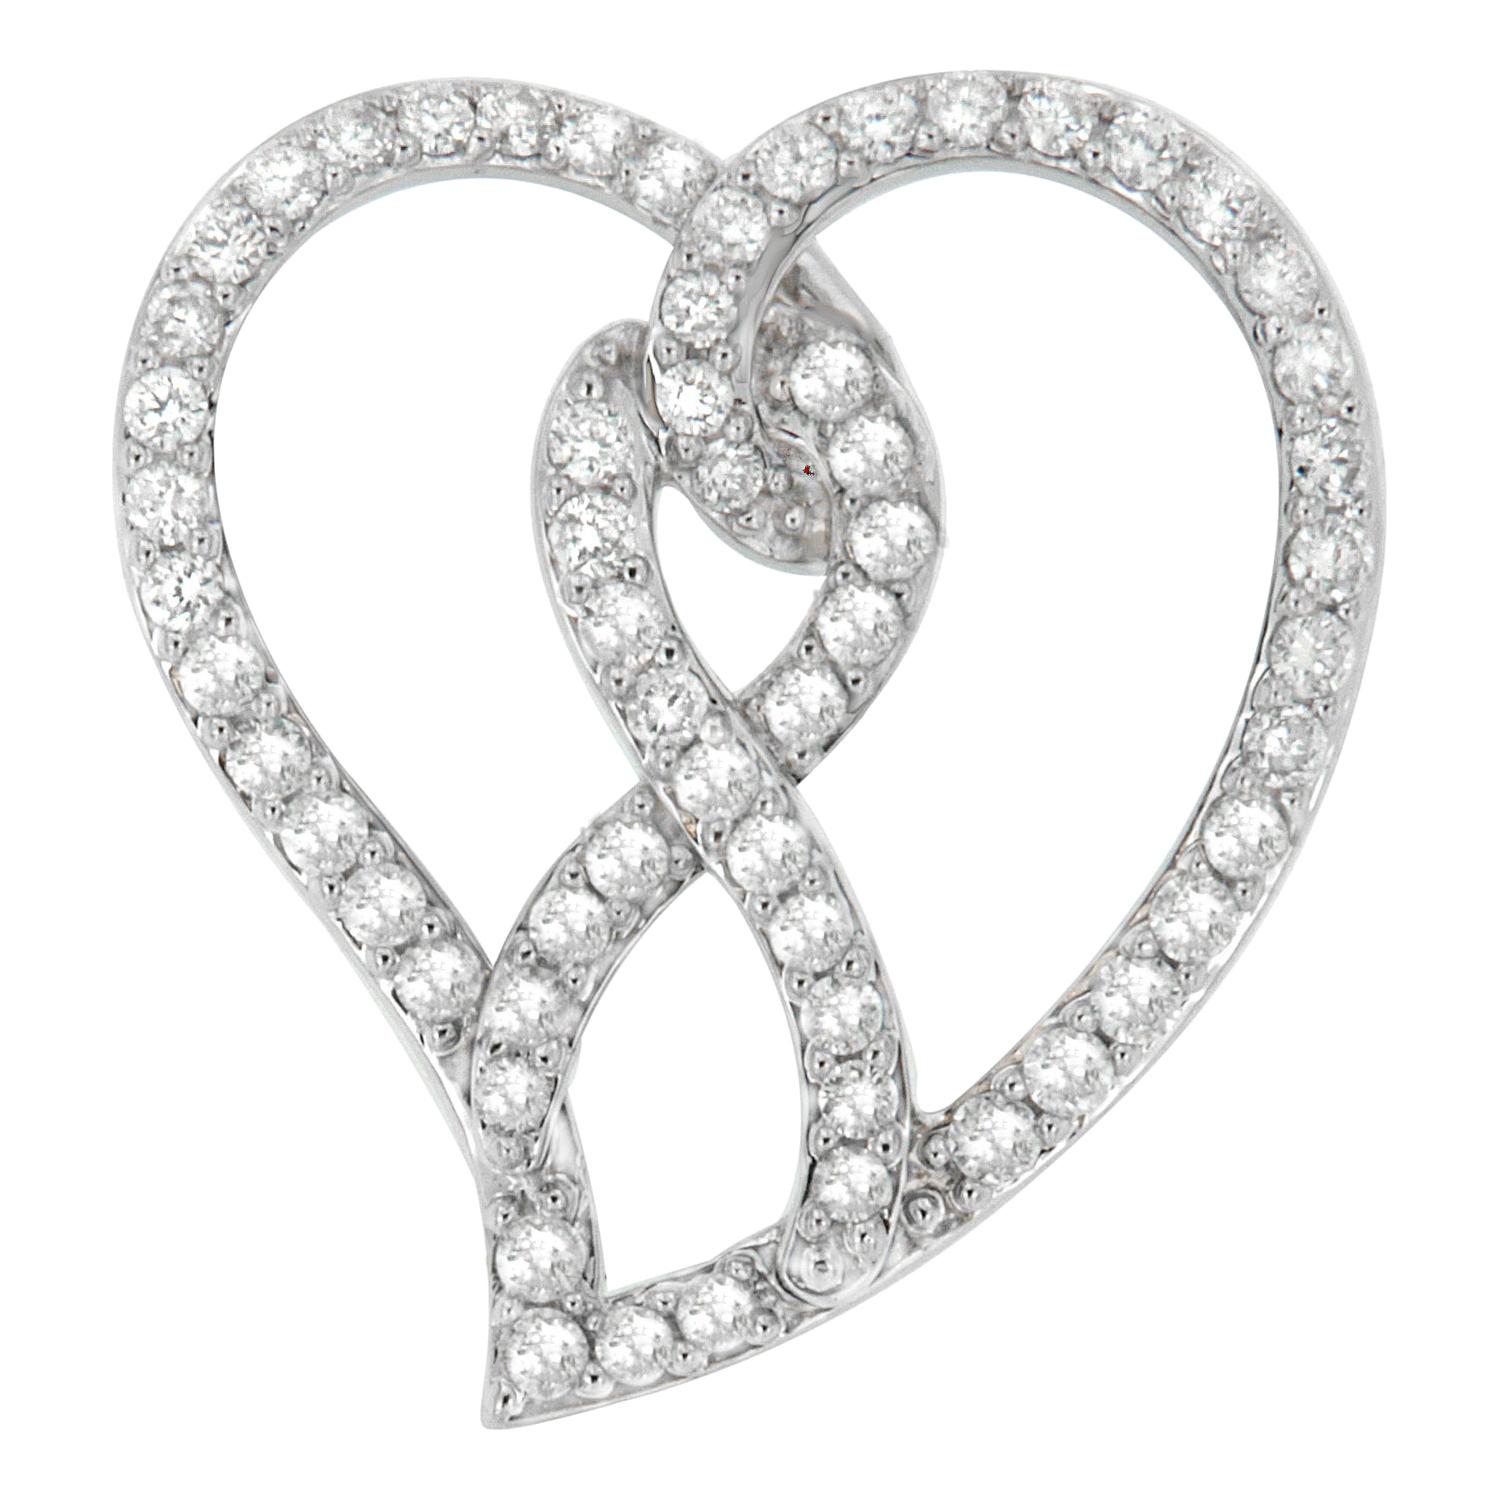 14k White Gold 1ct TDW Round-Cut Diamond Heart Pendant Necklace 'H-I, I1-I2'